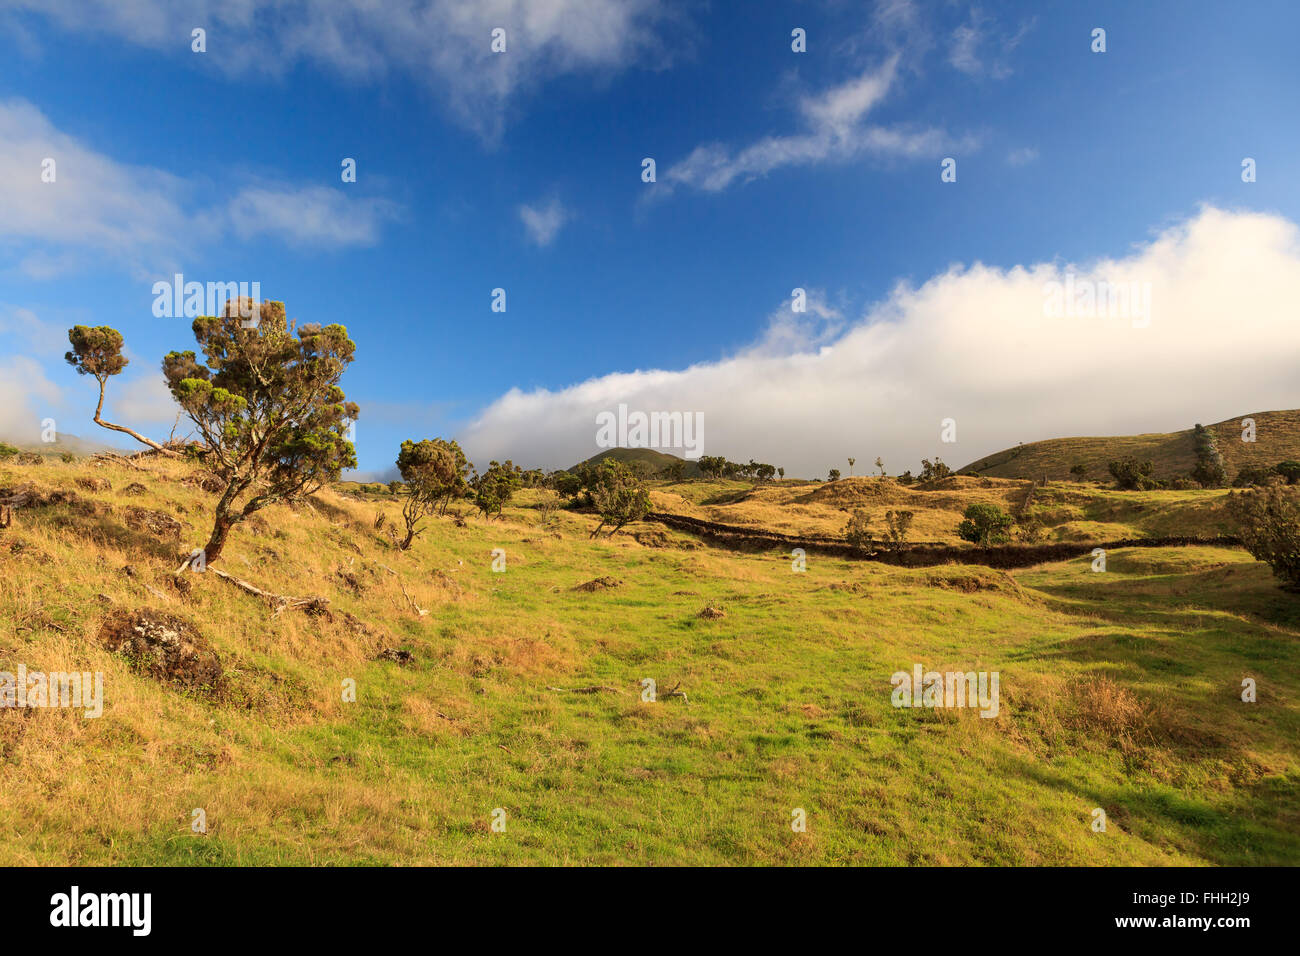 Açores - paysage de l'herbe, arbres et nuages dans le ciel bleu Banque D'Images